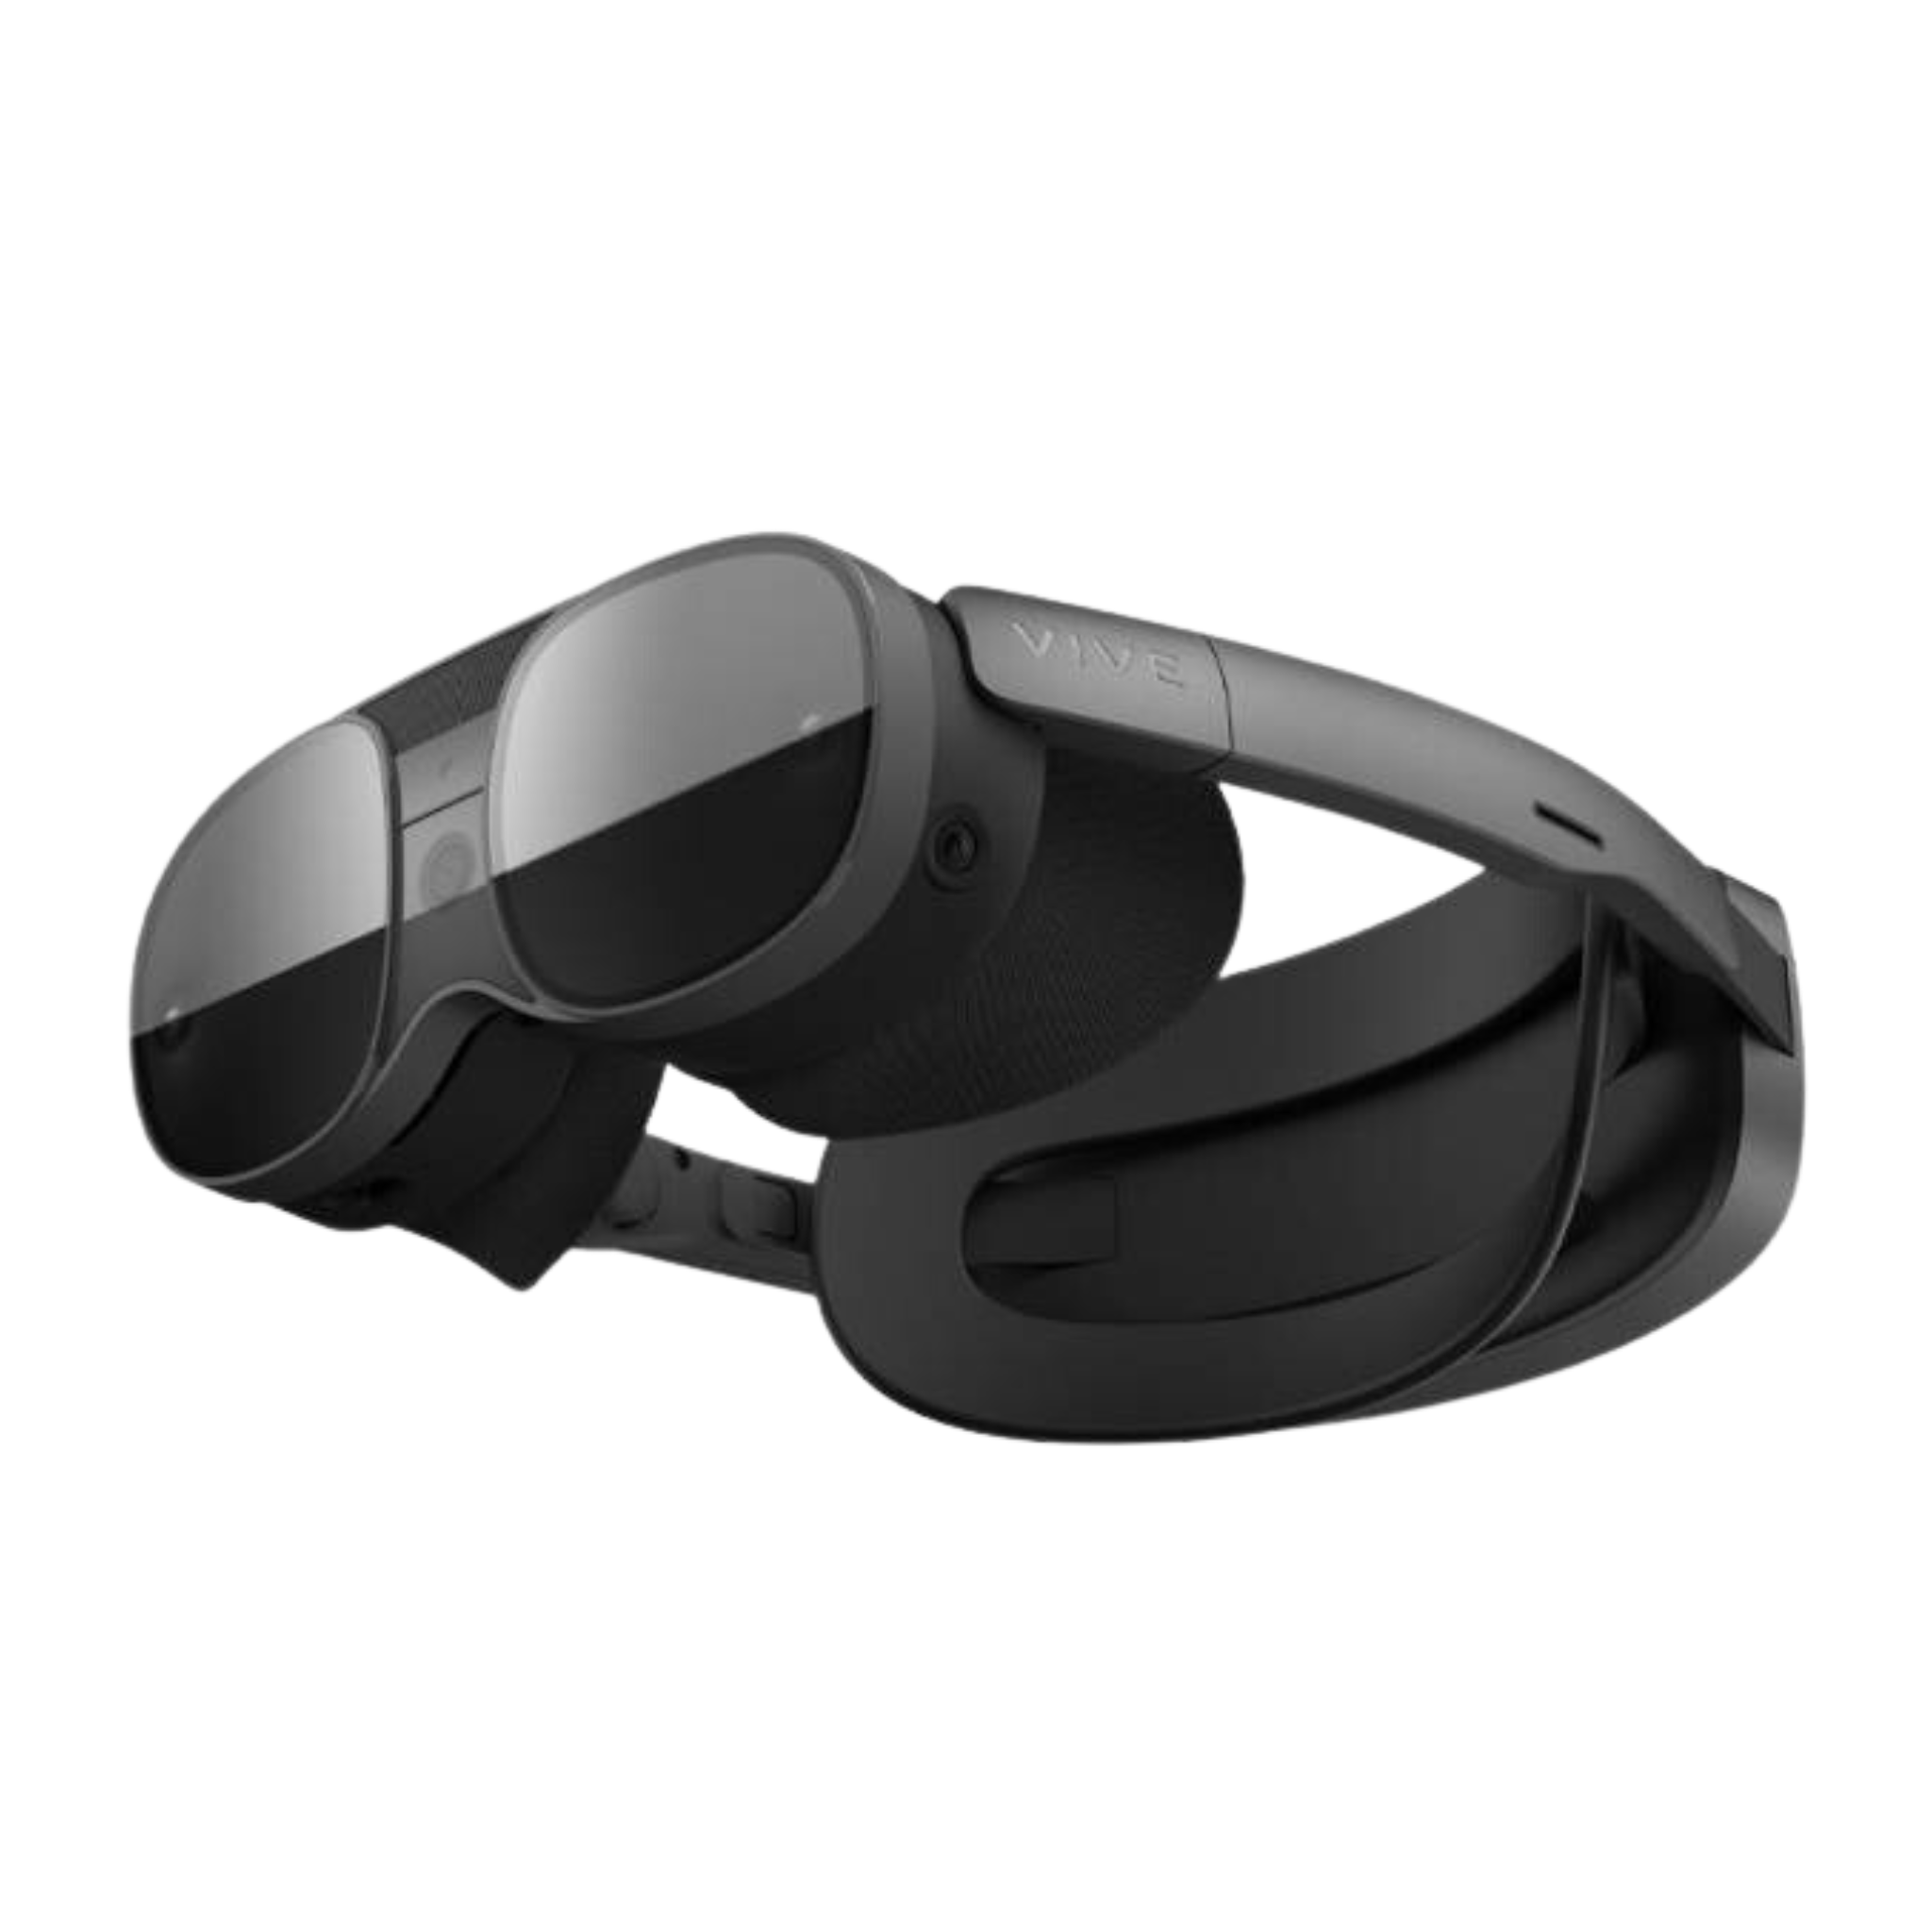 PlayStation VR2 Original – A Revolução do Gaming em Realidade